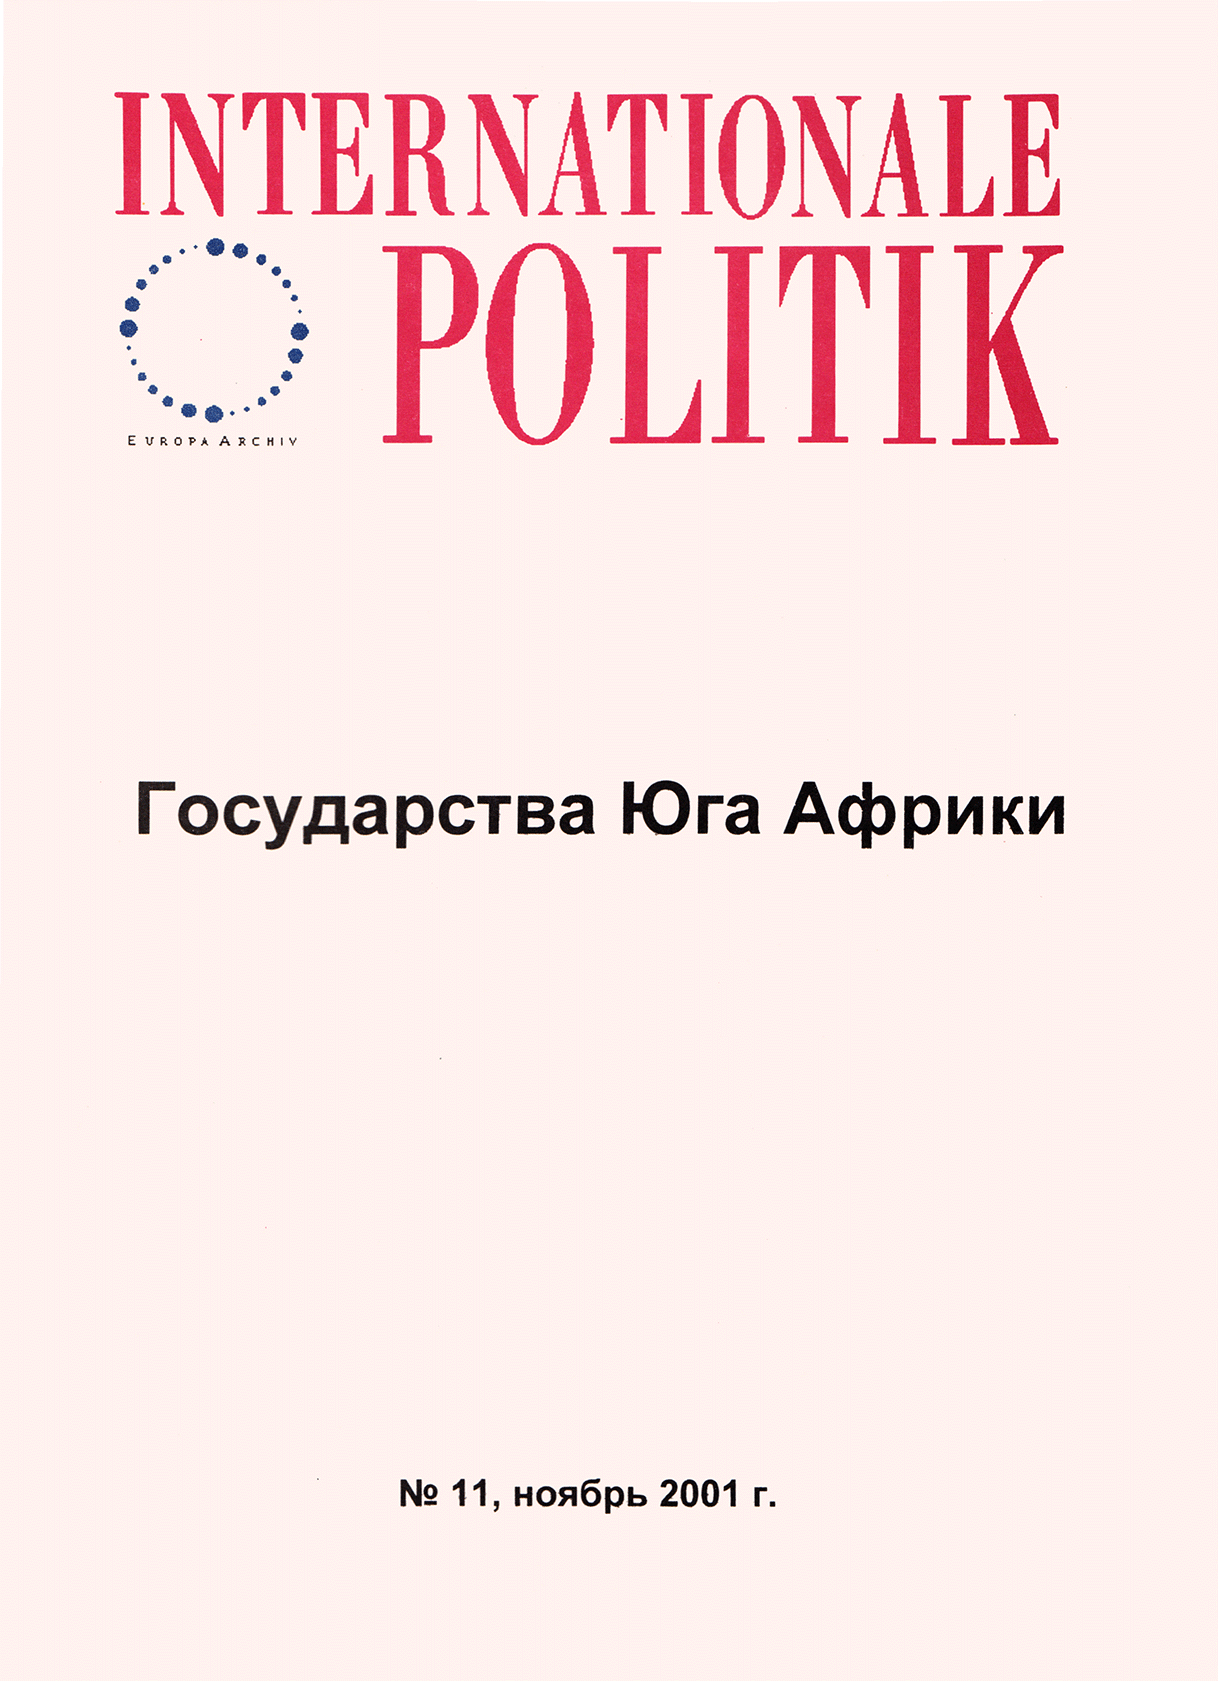 Internationale Politik, issue ноябрь, no. 11, 2001, p. 16-24;